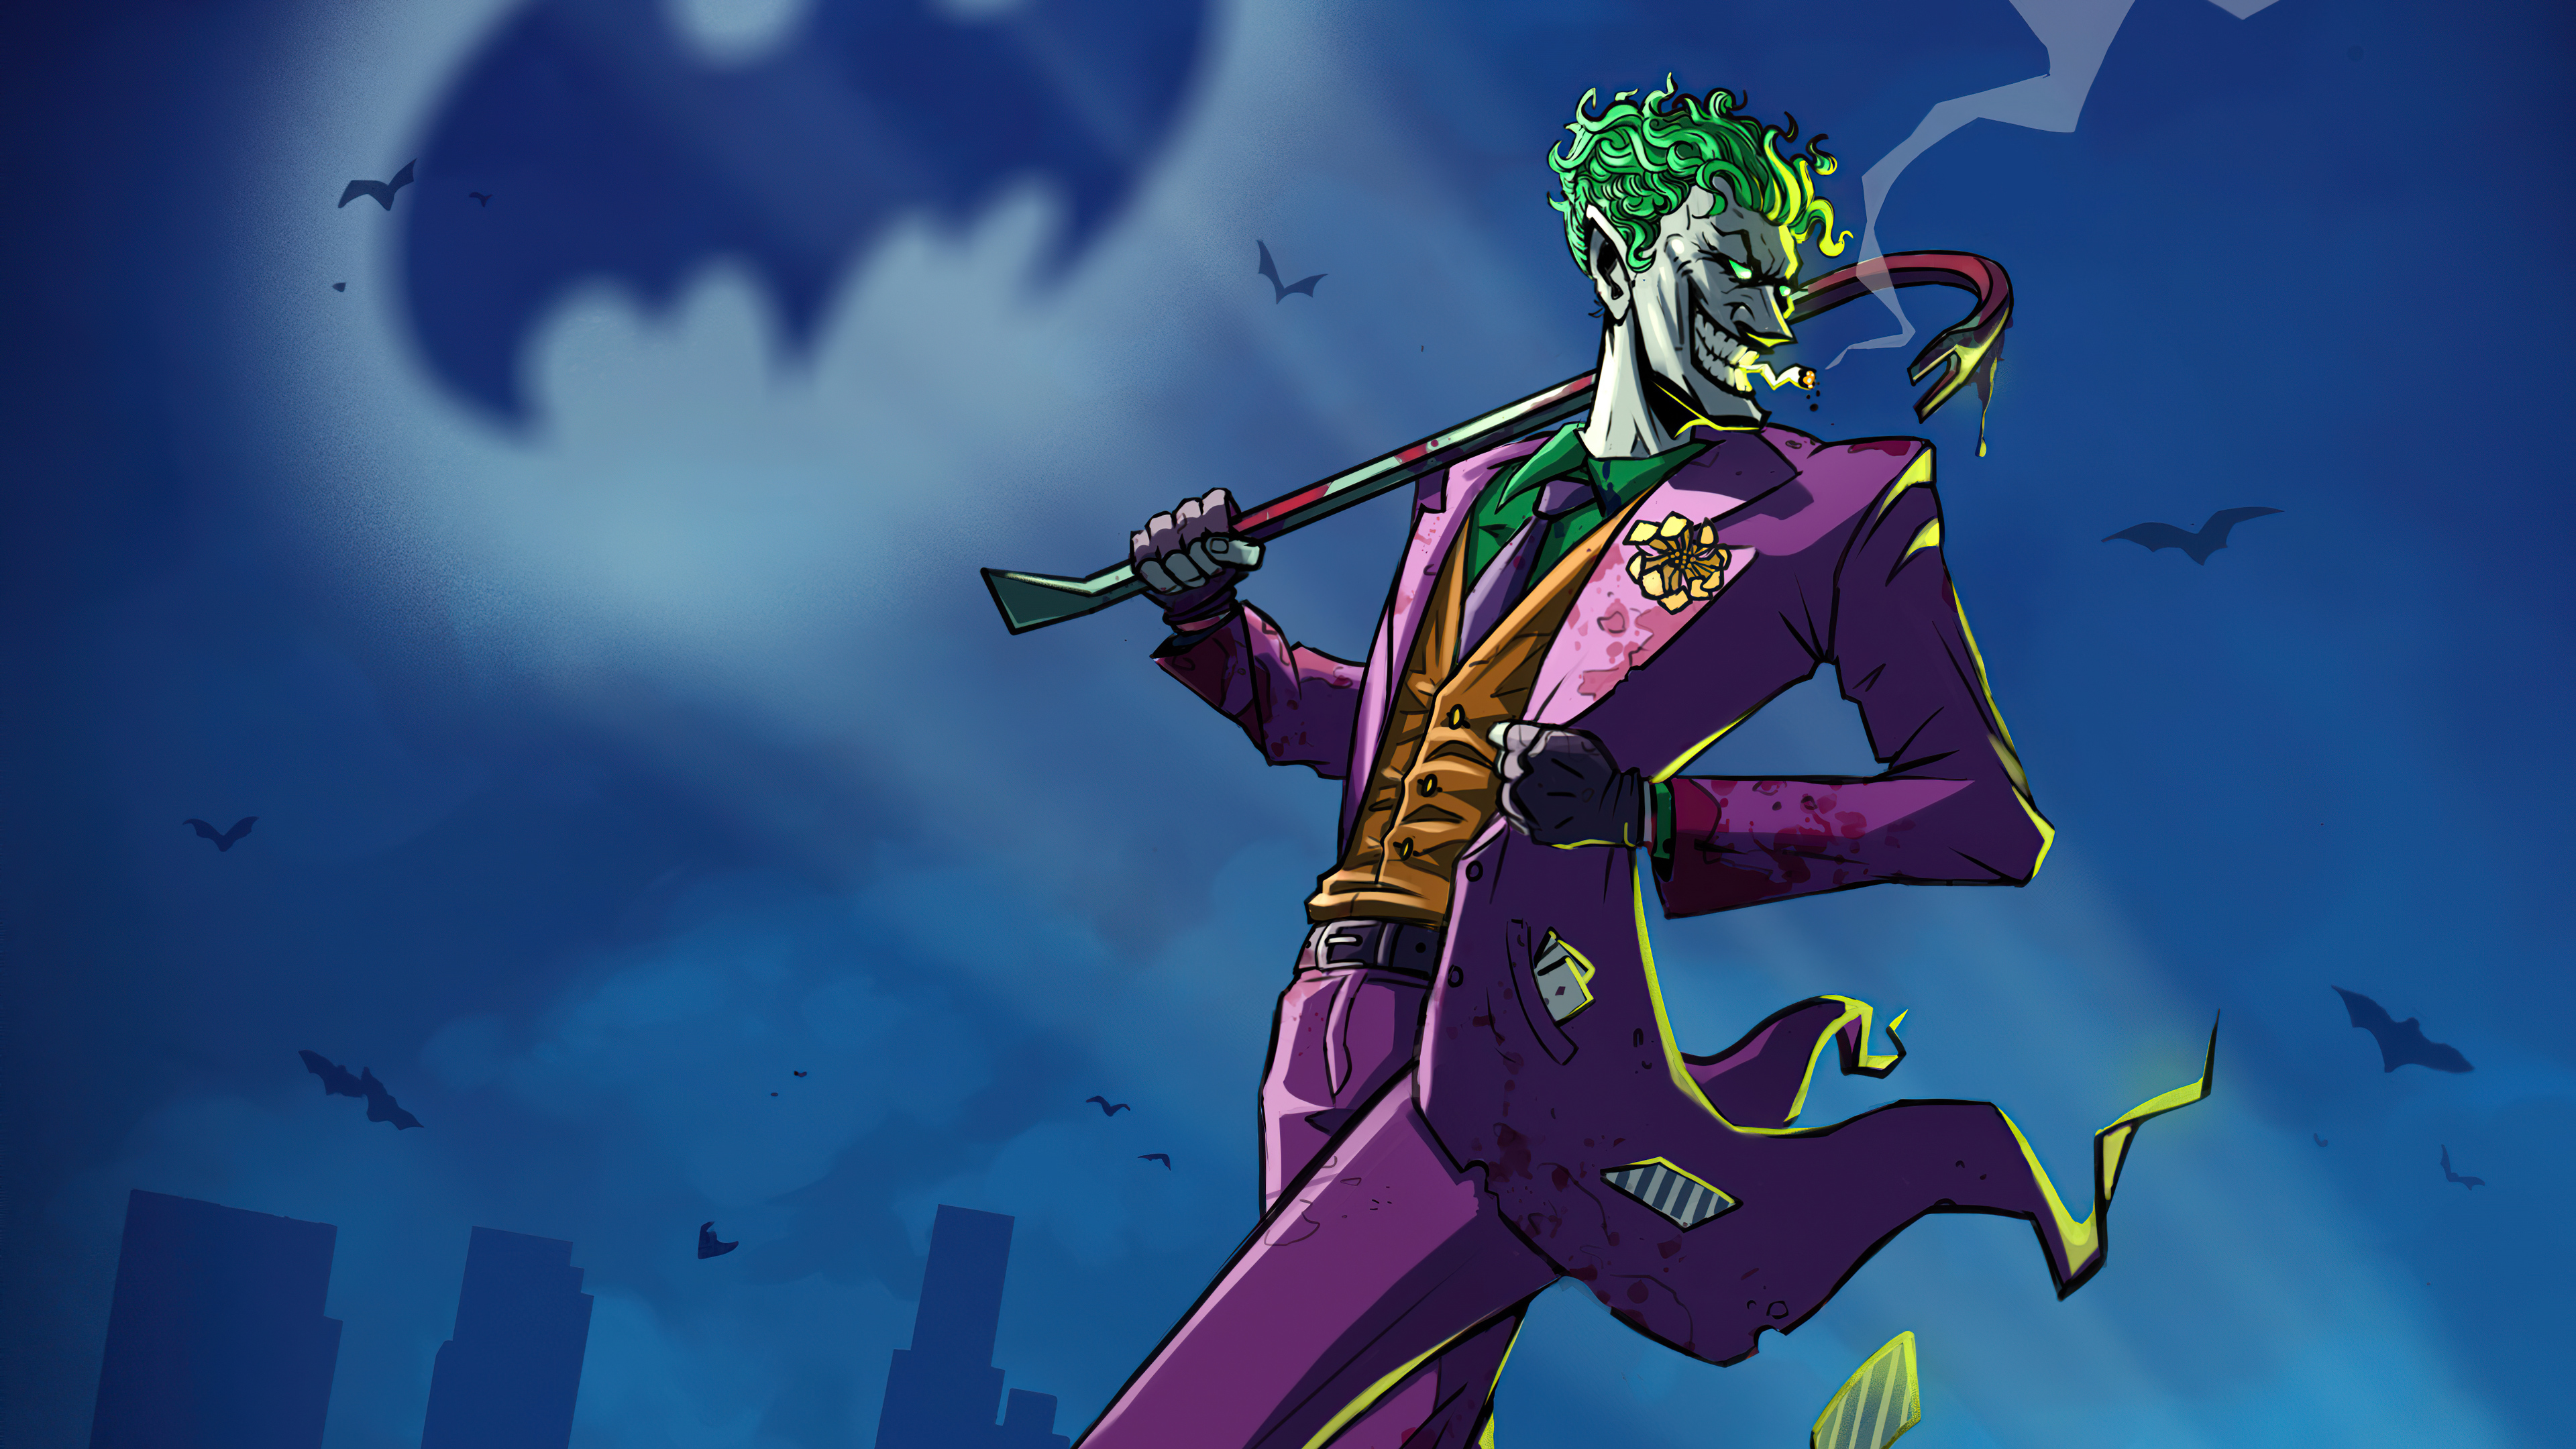 Wallpaper  illustration Joker cartoon fictional character comics  artist comic book supervillain 1920x1440  UberLost  119995  HD  Wallpapers  WallHere